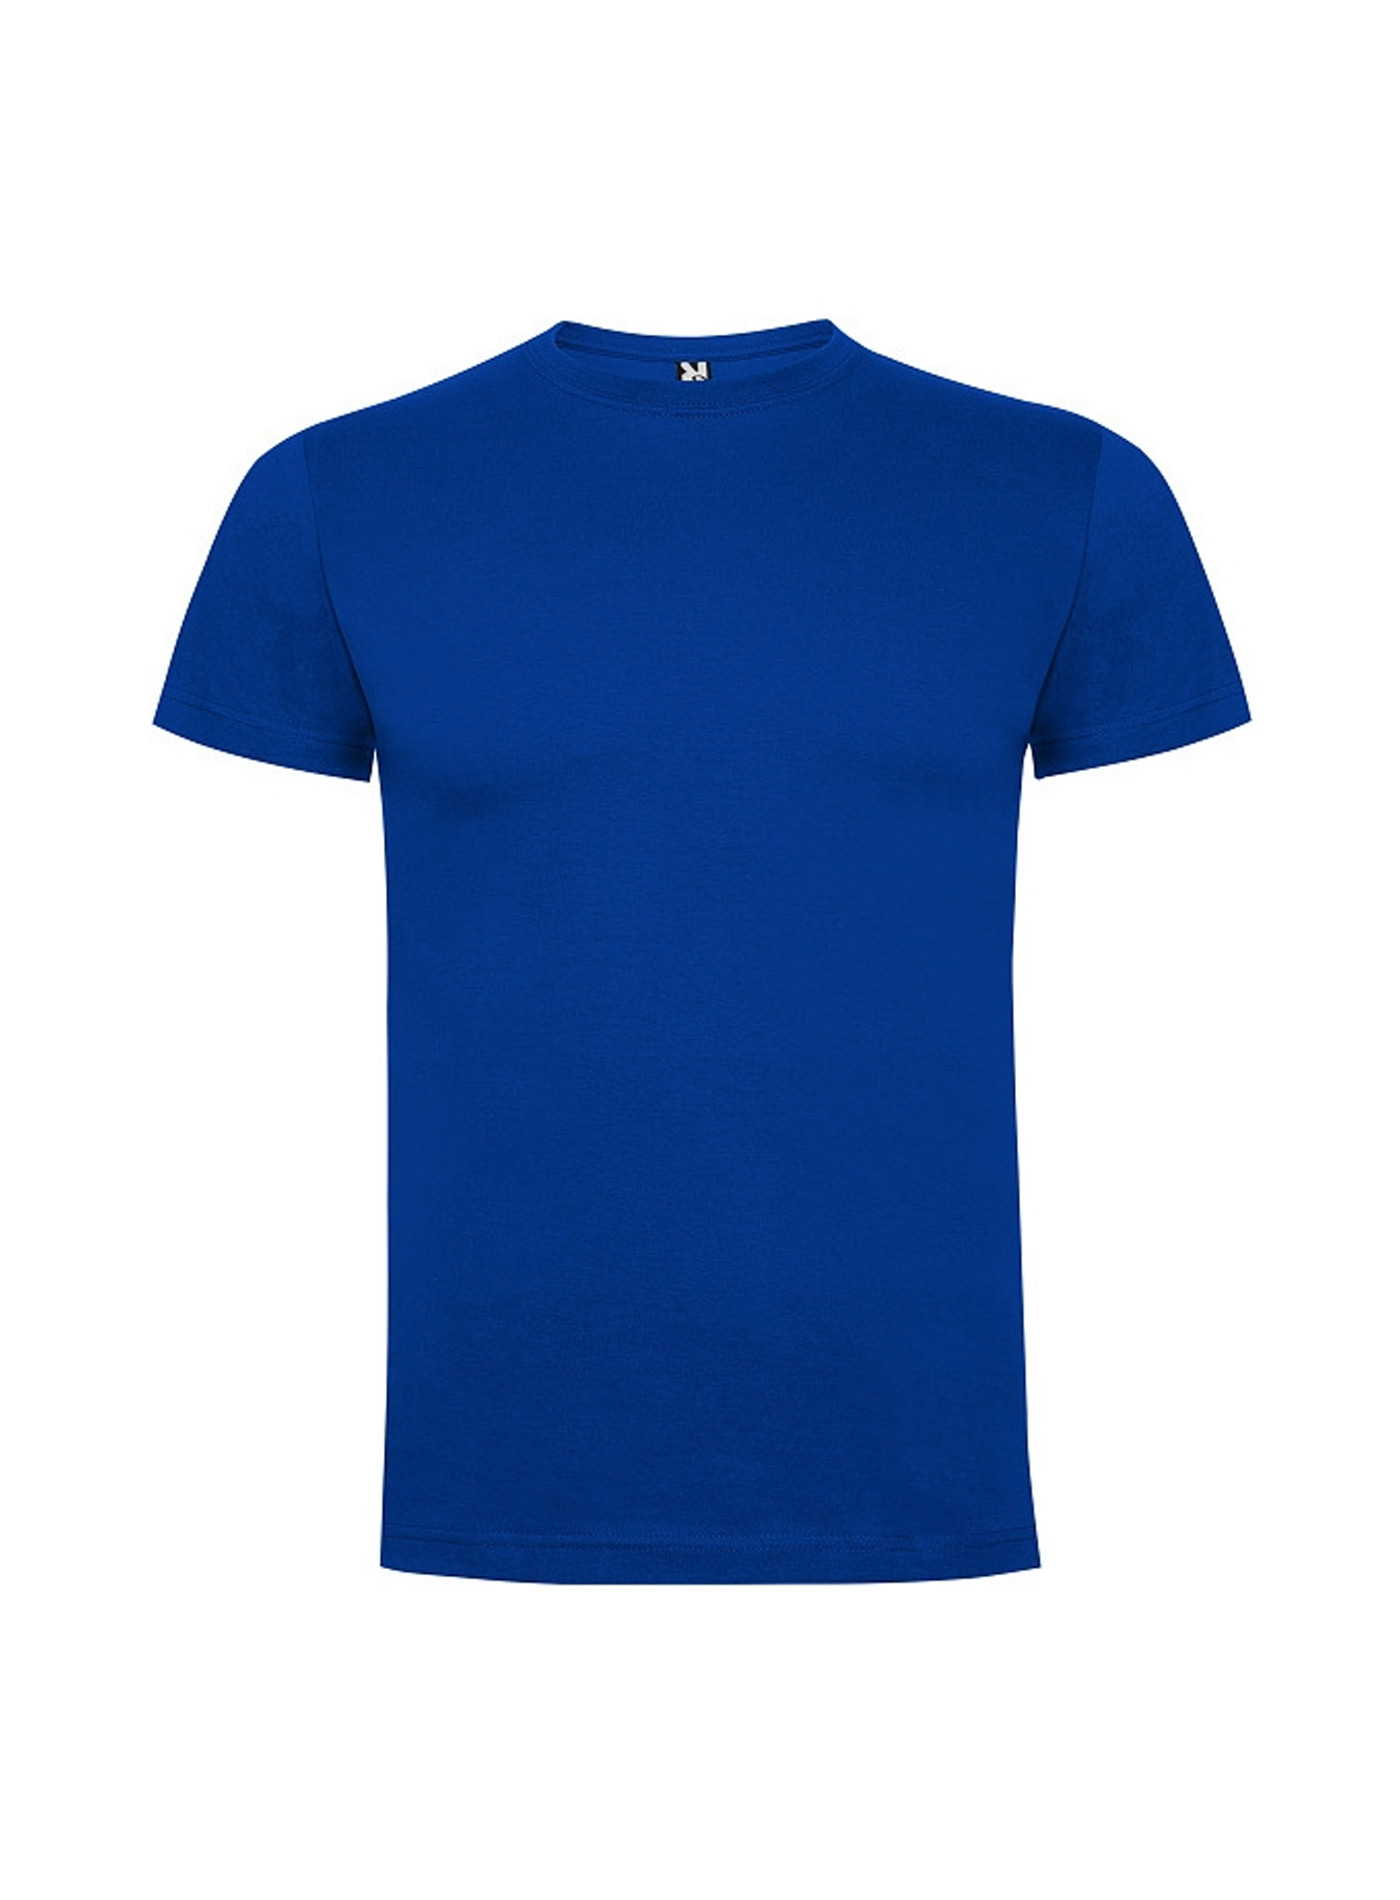 Dětské tričko Roly Dogo premium - Královská modrá 3-4